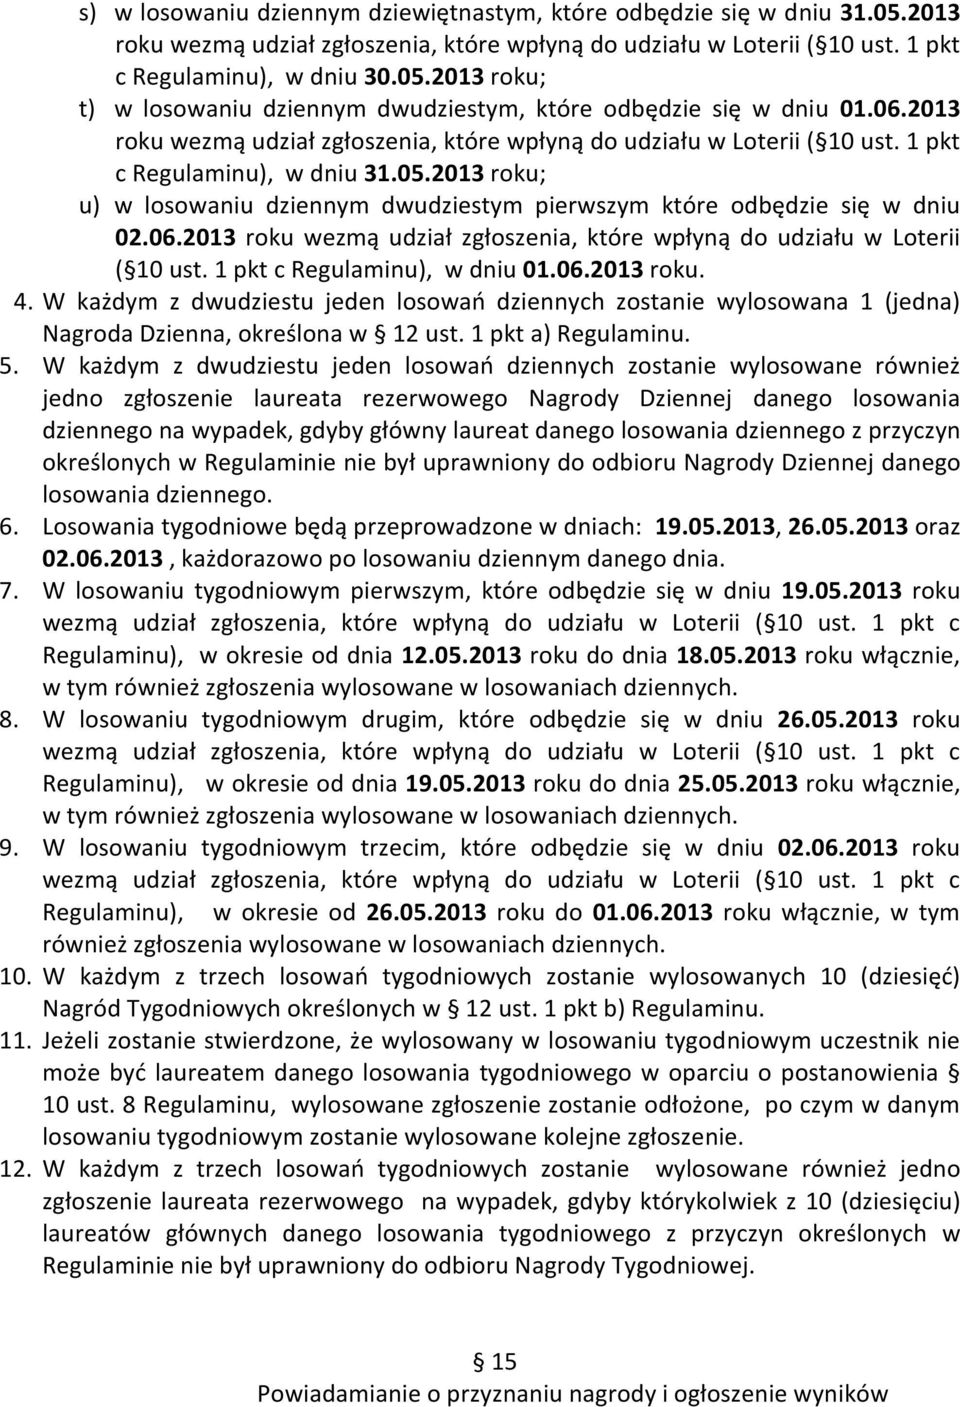 2013 roku; u) w losowaniu dziennym dwudziestym pierwszym które odbędzie się w dniu 02.06.2013 roku wezmą udział zgłoszenia, które wpłyną do udziału w Loterii ( 10 ust. 1 pkt c Regulaminu), w dniu 01.